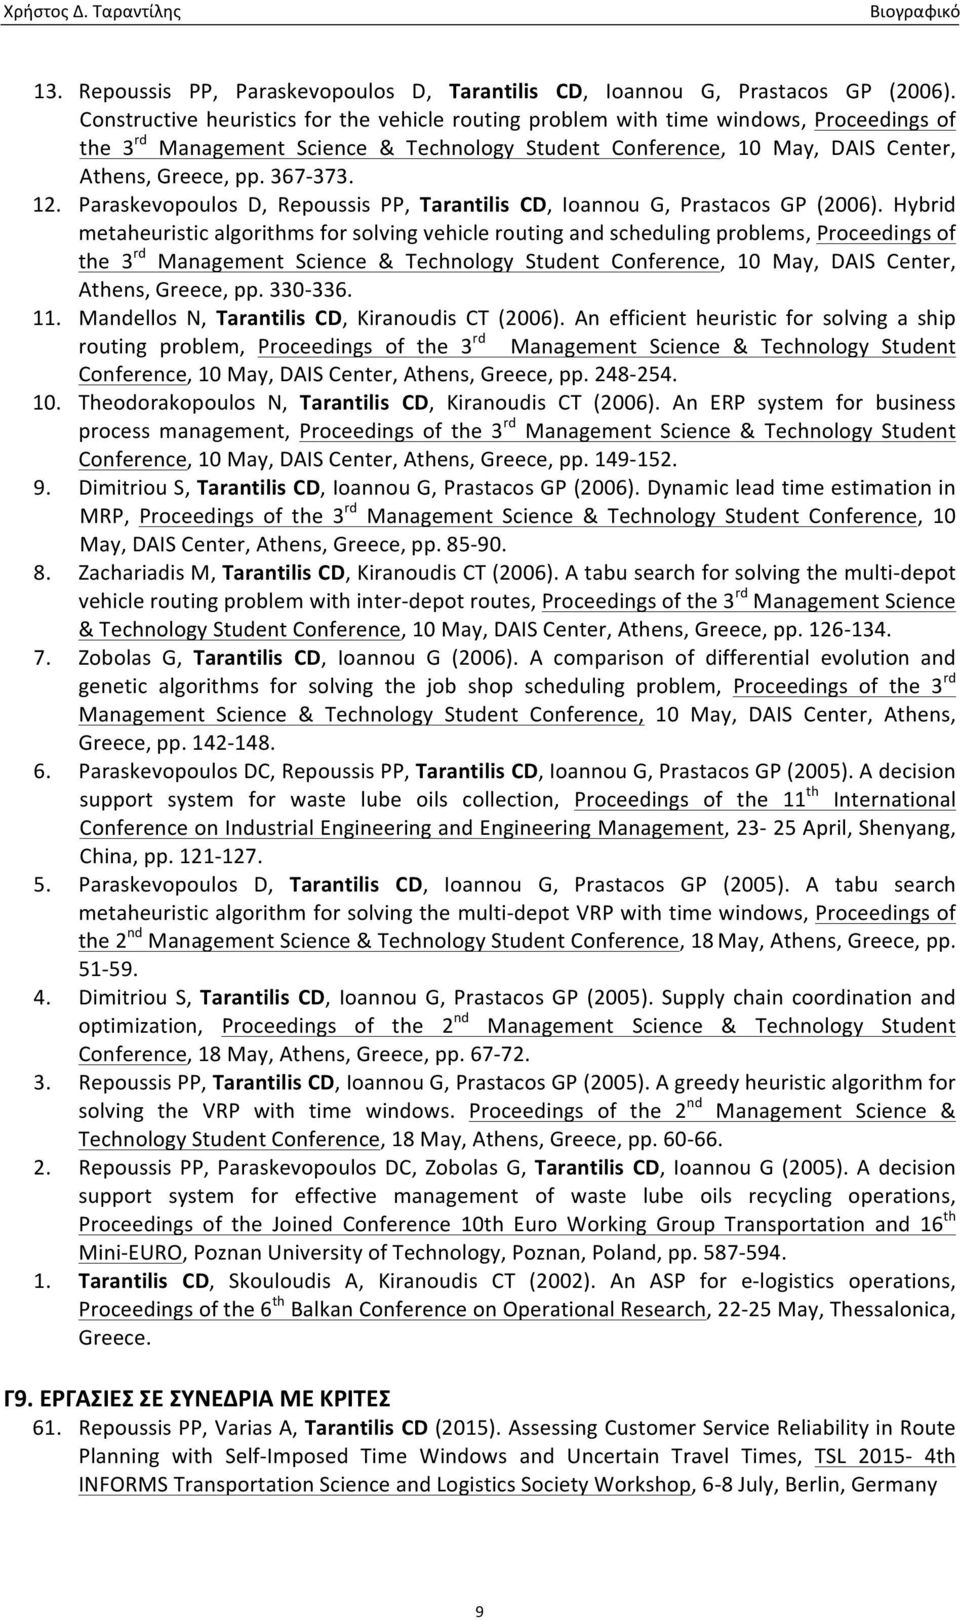 12. Paraskevopoulos D, Repoussis PP, Tarantilis CD, Ioannou G, Prastacos GP (2006).